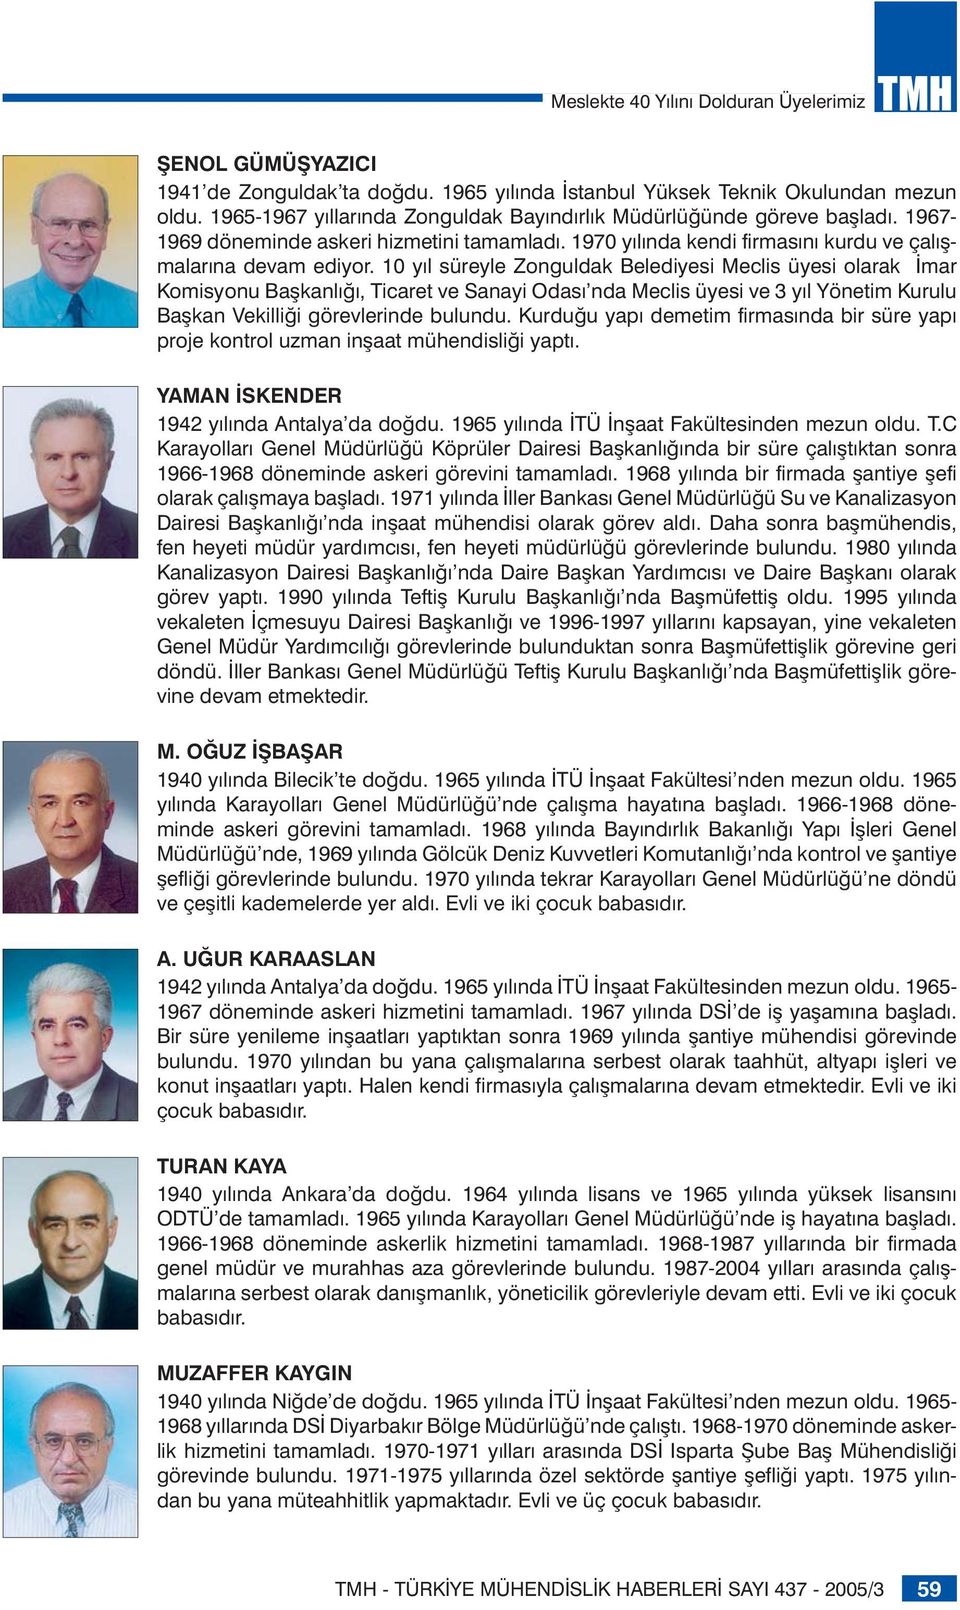 10 yıl süreyle Zonguldak Belediyesi Meclis üyesi olarak İmar Komisyonu Başkanlığı, Ticaret ve Sanayi Odası nda Meclis üyesi ve 3 yıl Yönetim Kurulu Başkan Vekilliği görevlerinde bulundu.